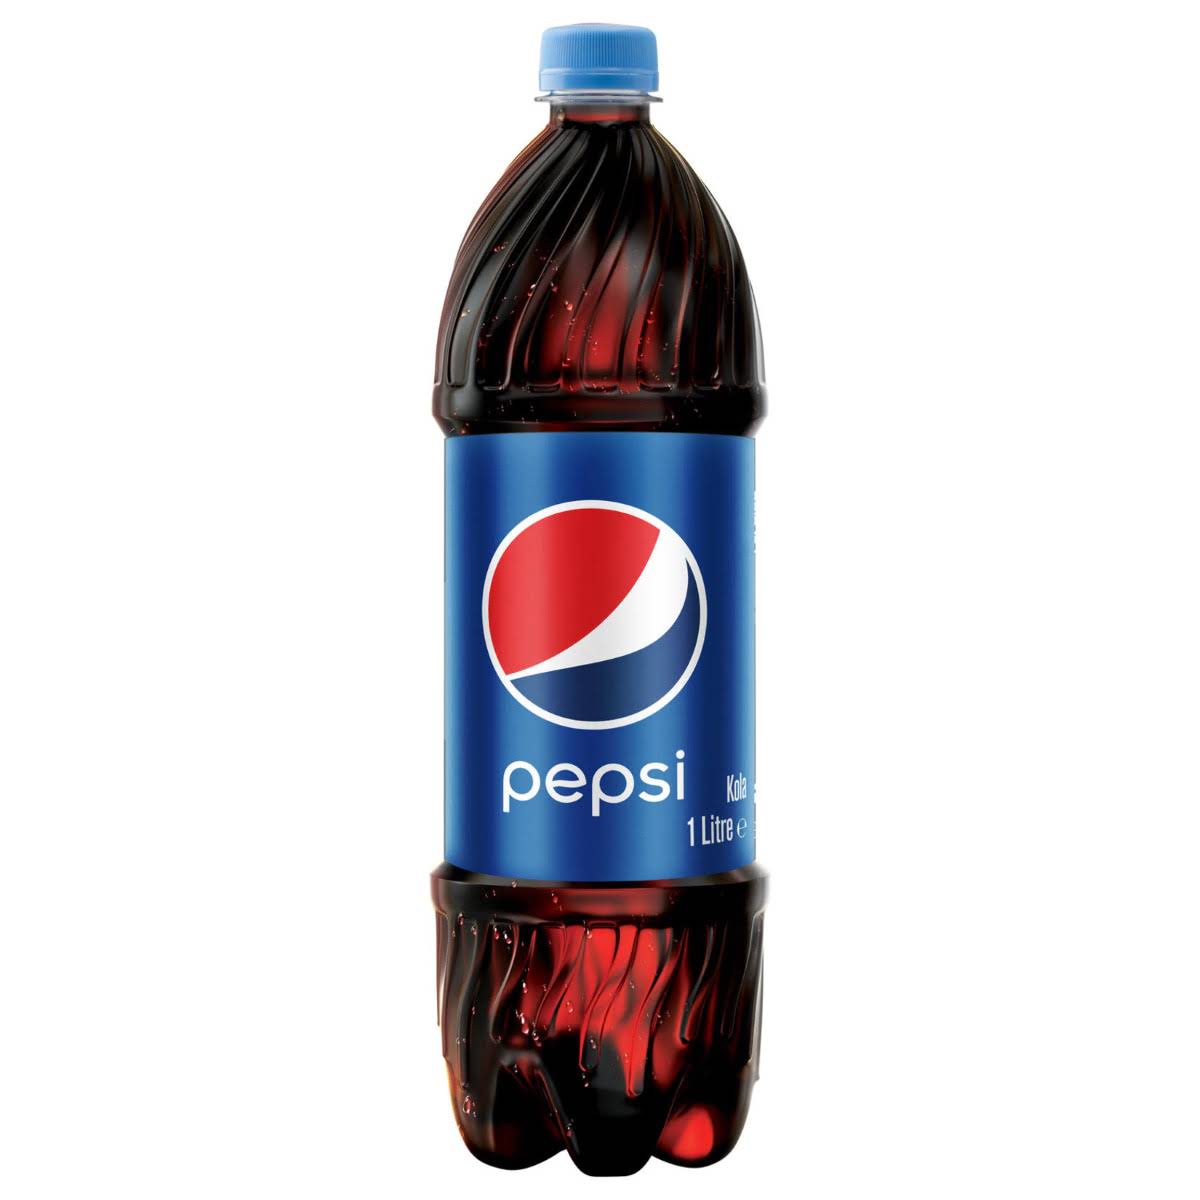 Kola cola 1 litrelik pet ambalajlarda kolide 12 adet Pepsi marka kola gazlı içecek